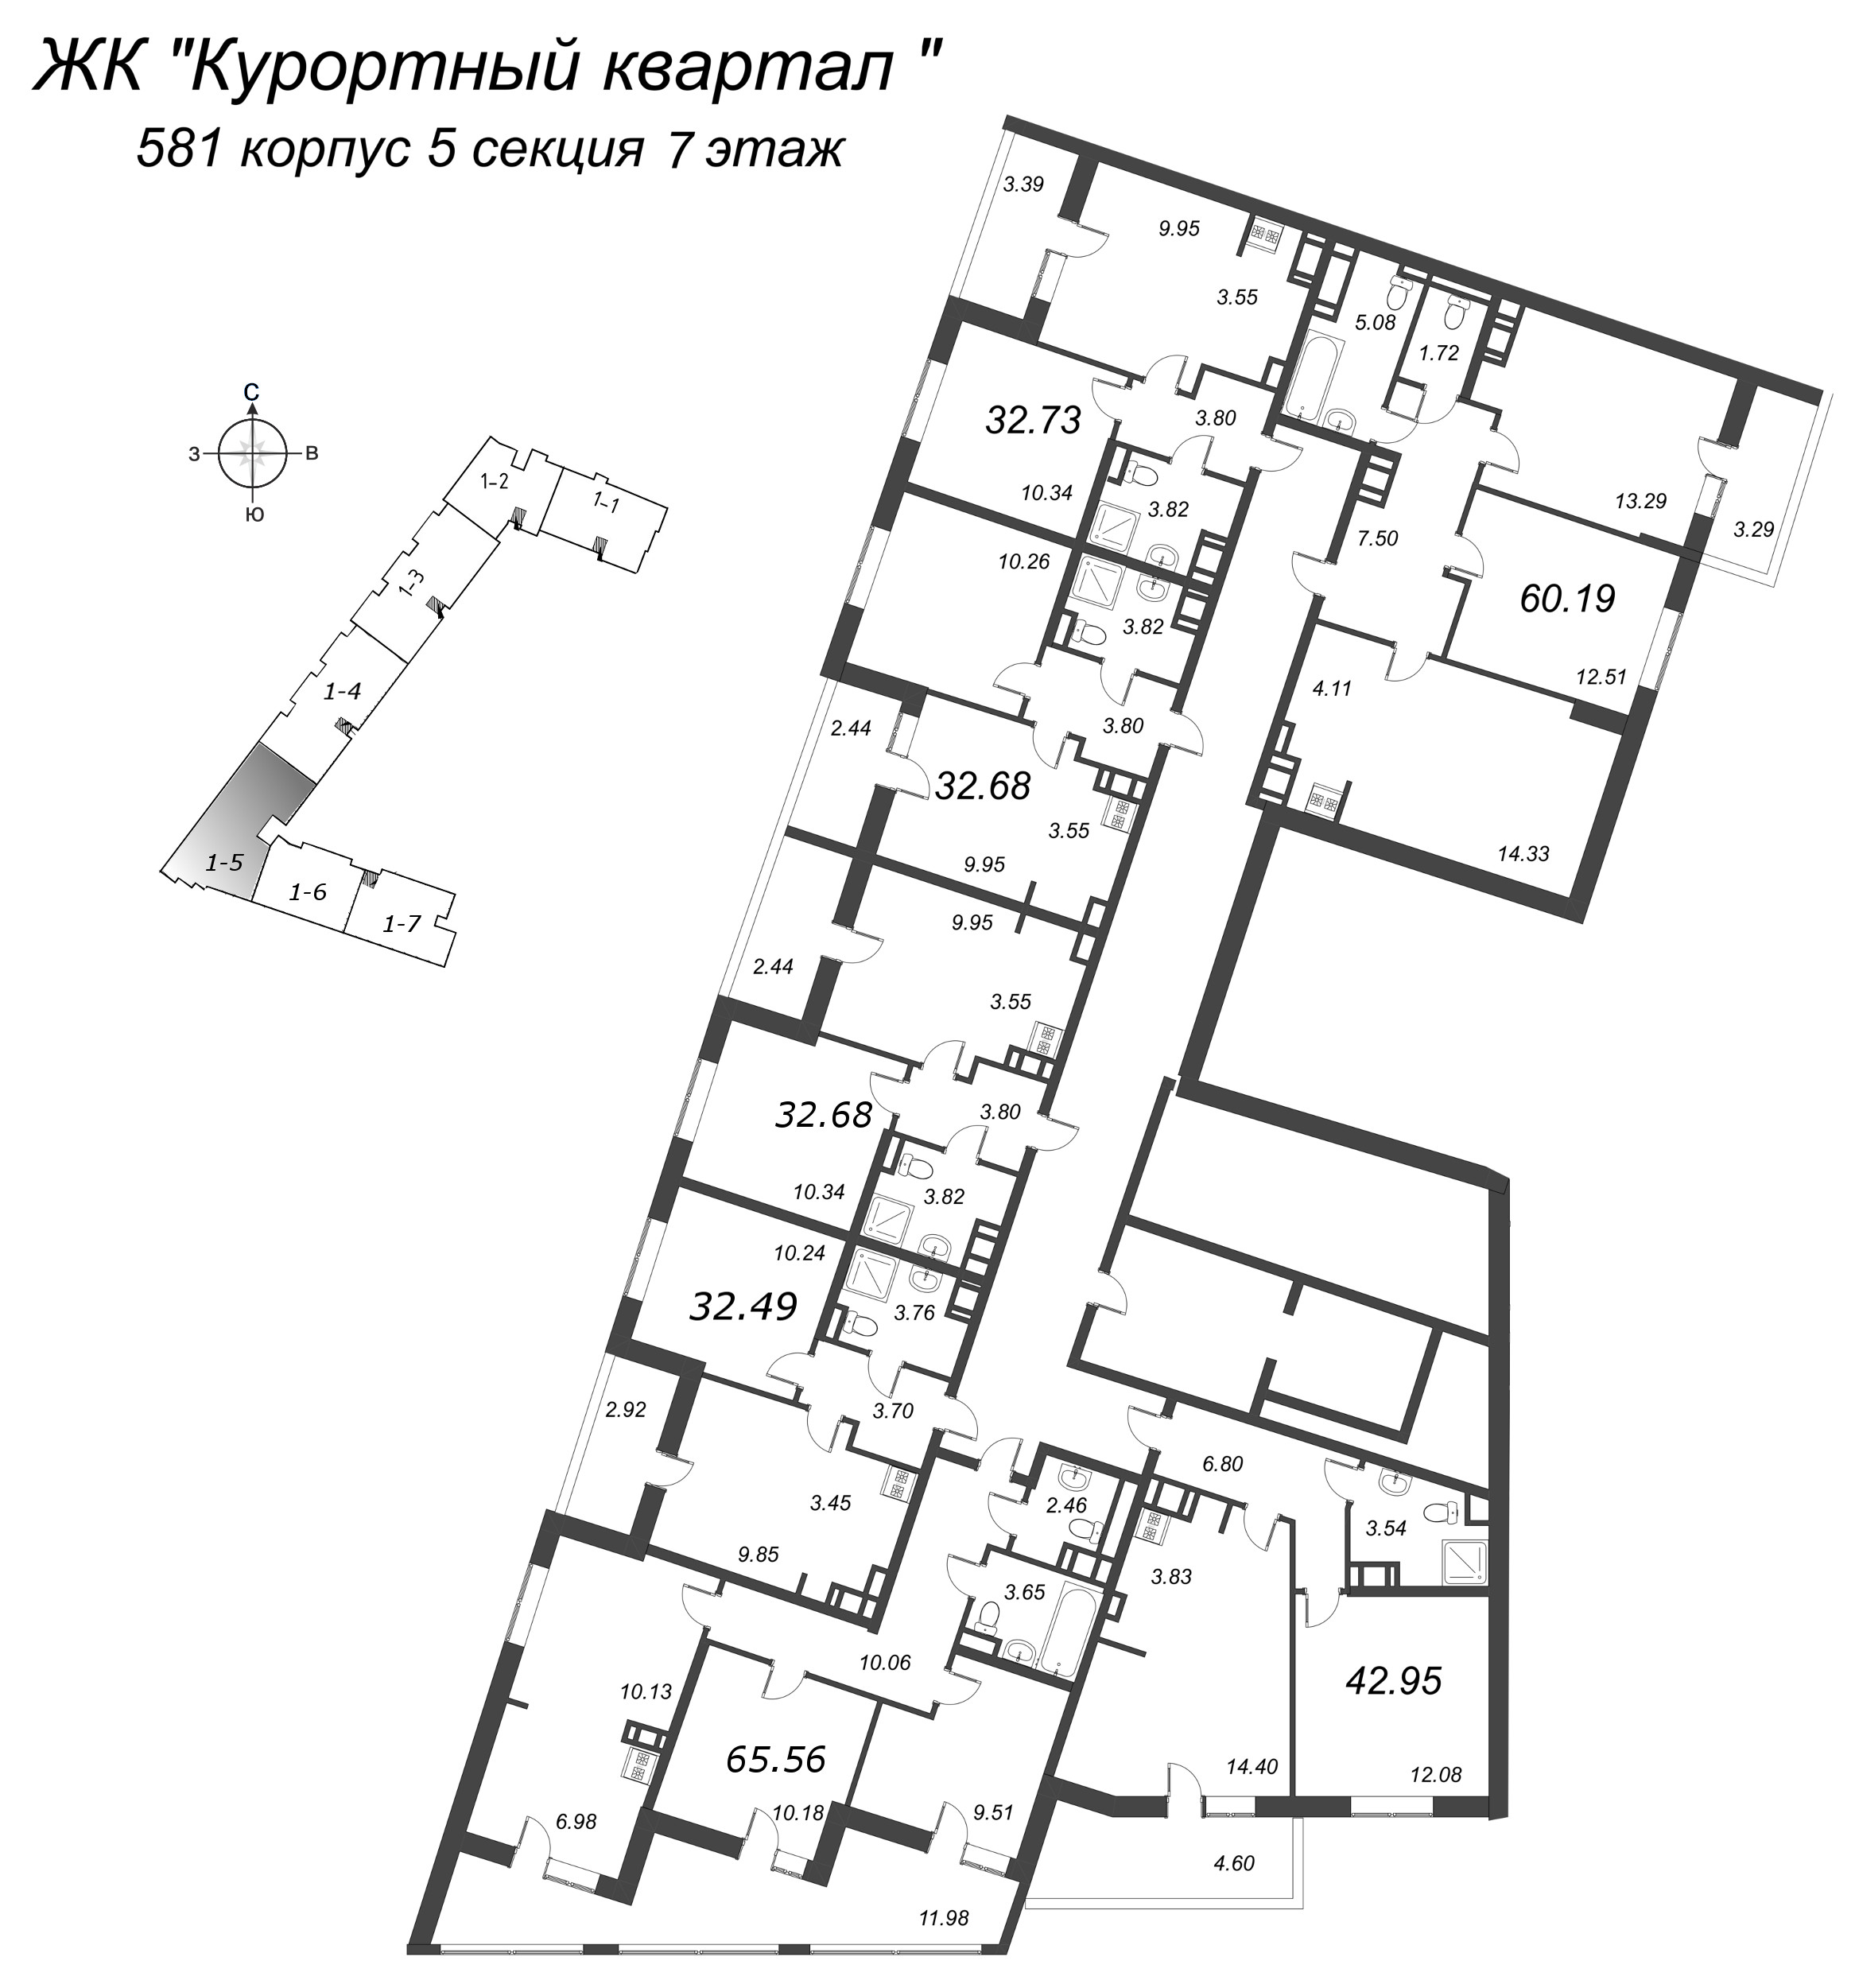 3-комнатная (Евро) квартира, 56.56 м² в ЖК "Курортный Квартал" - планировка этажа